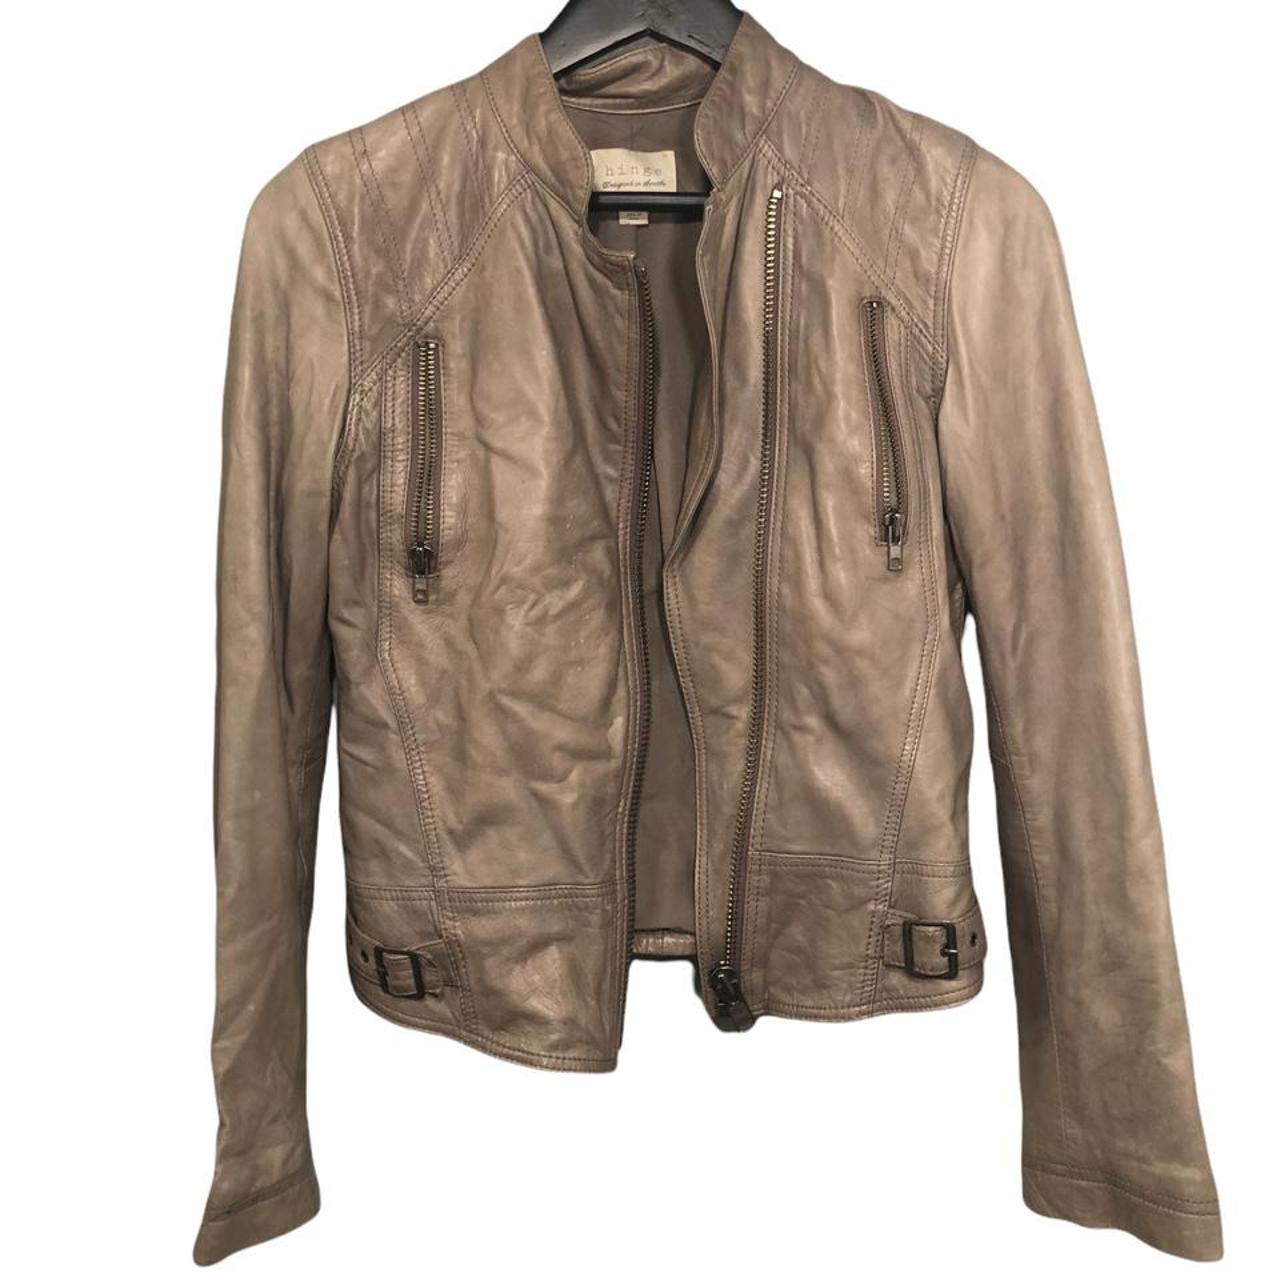 Product Image 3 - ⭐️Beige leather jacket from HINGE
⭐️Measurements